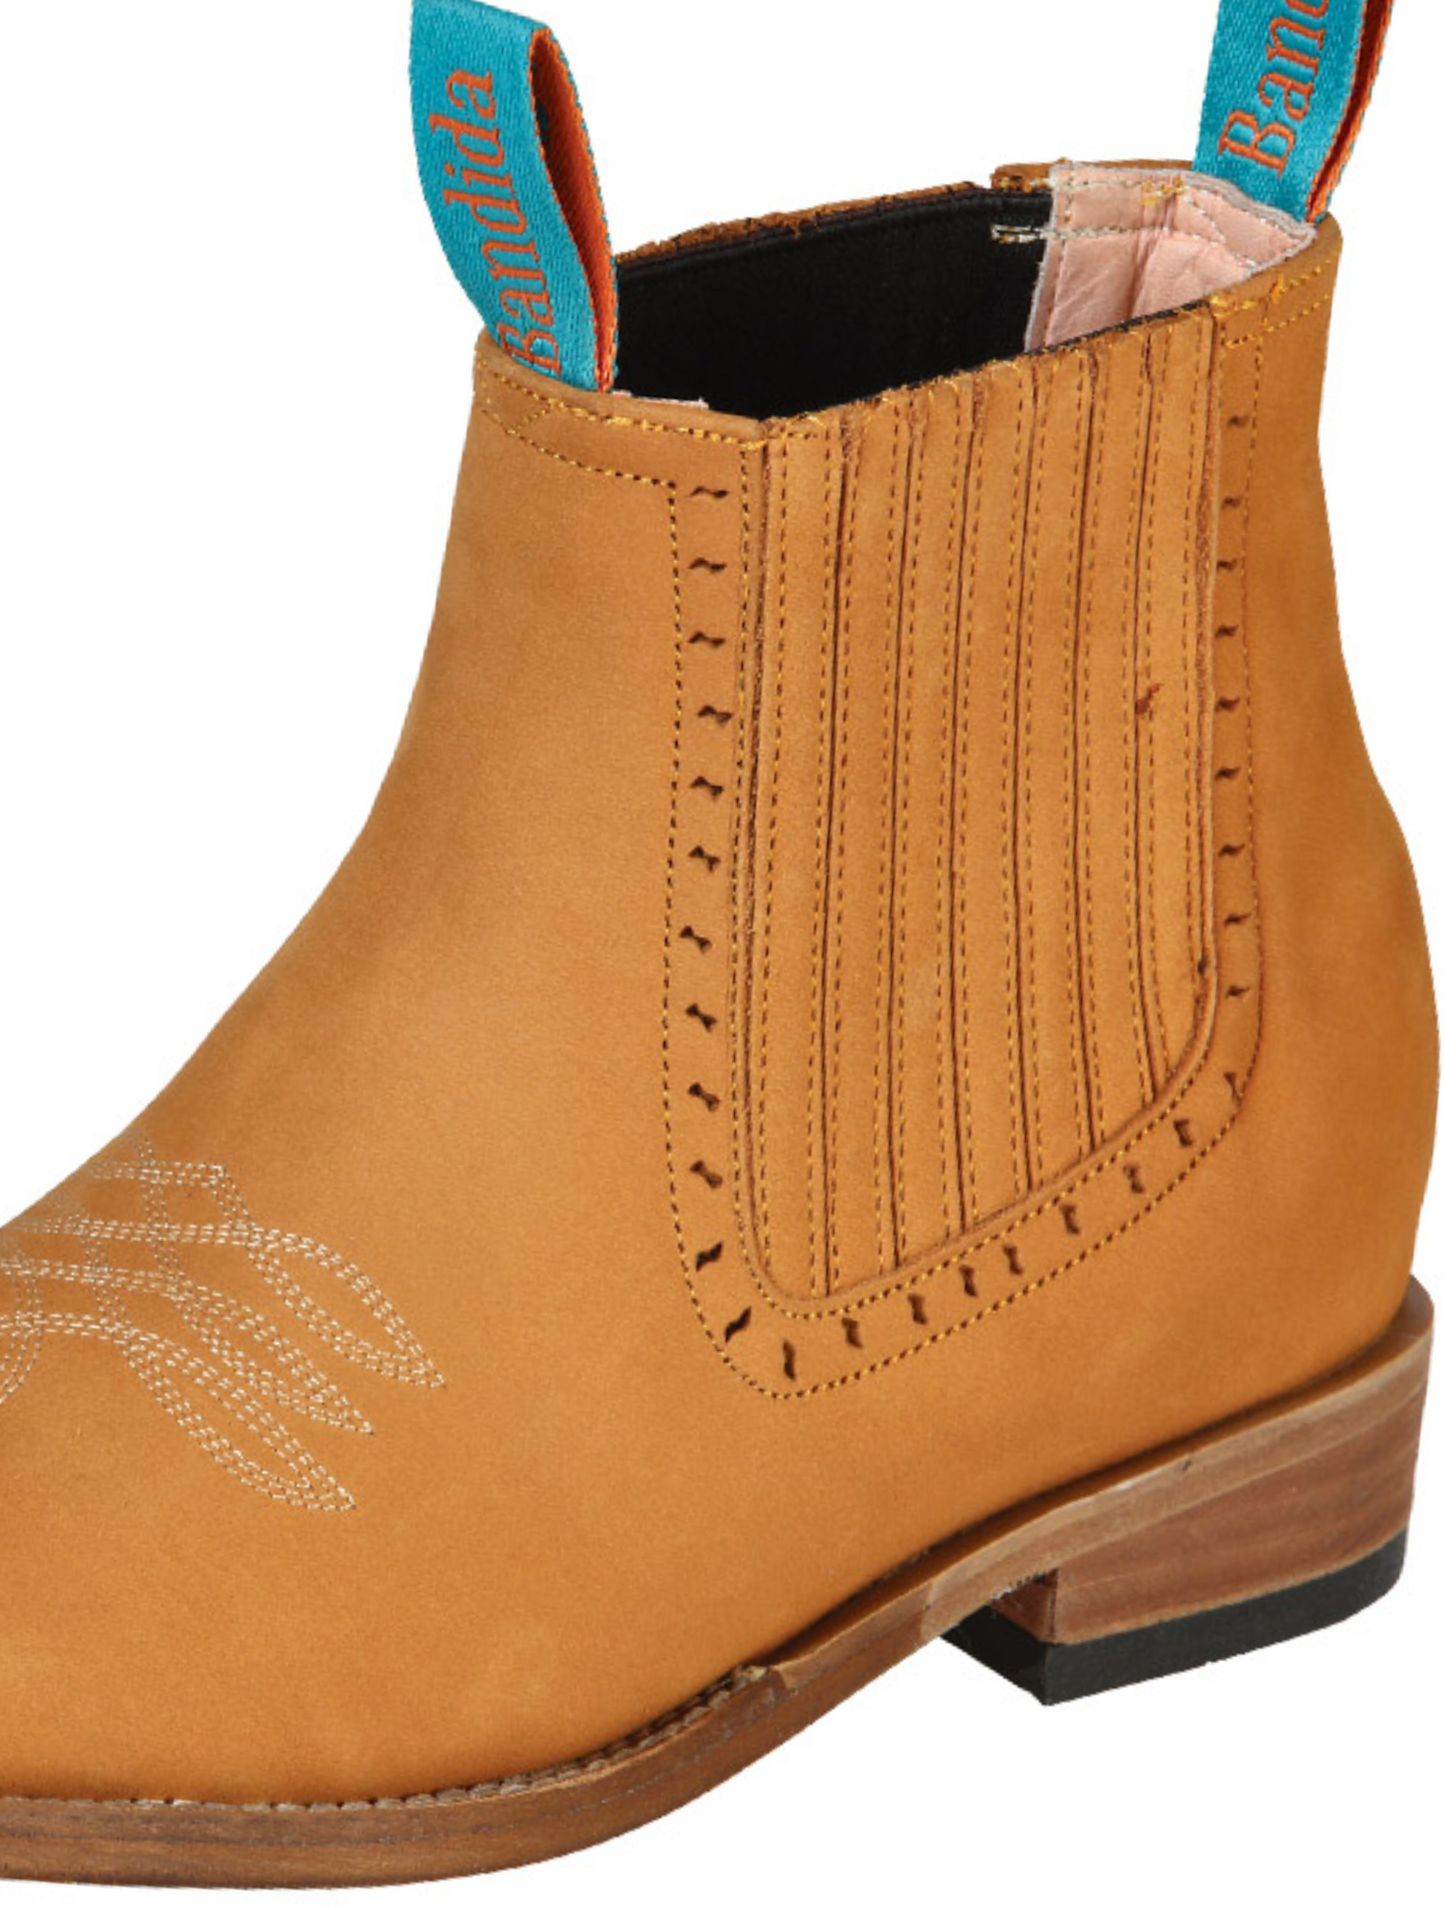 Botines Vaqueros Rodeo Clasicos de Piel Nobuck para Mujer 'La Barca' - ID: 126664 Western Ankle Boots La Barca 